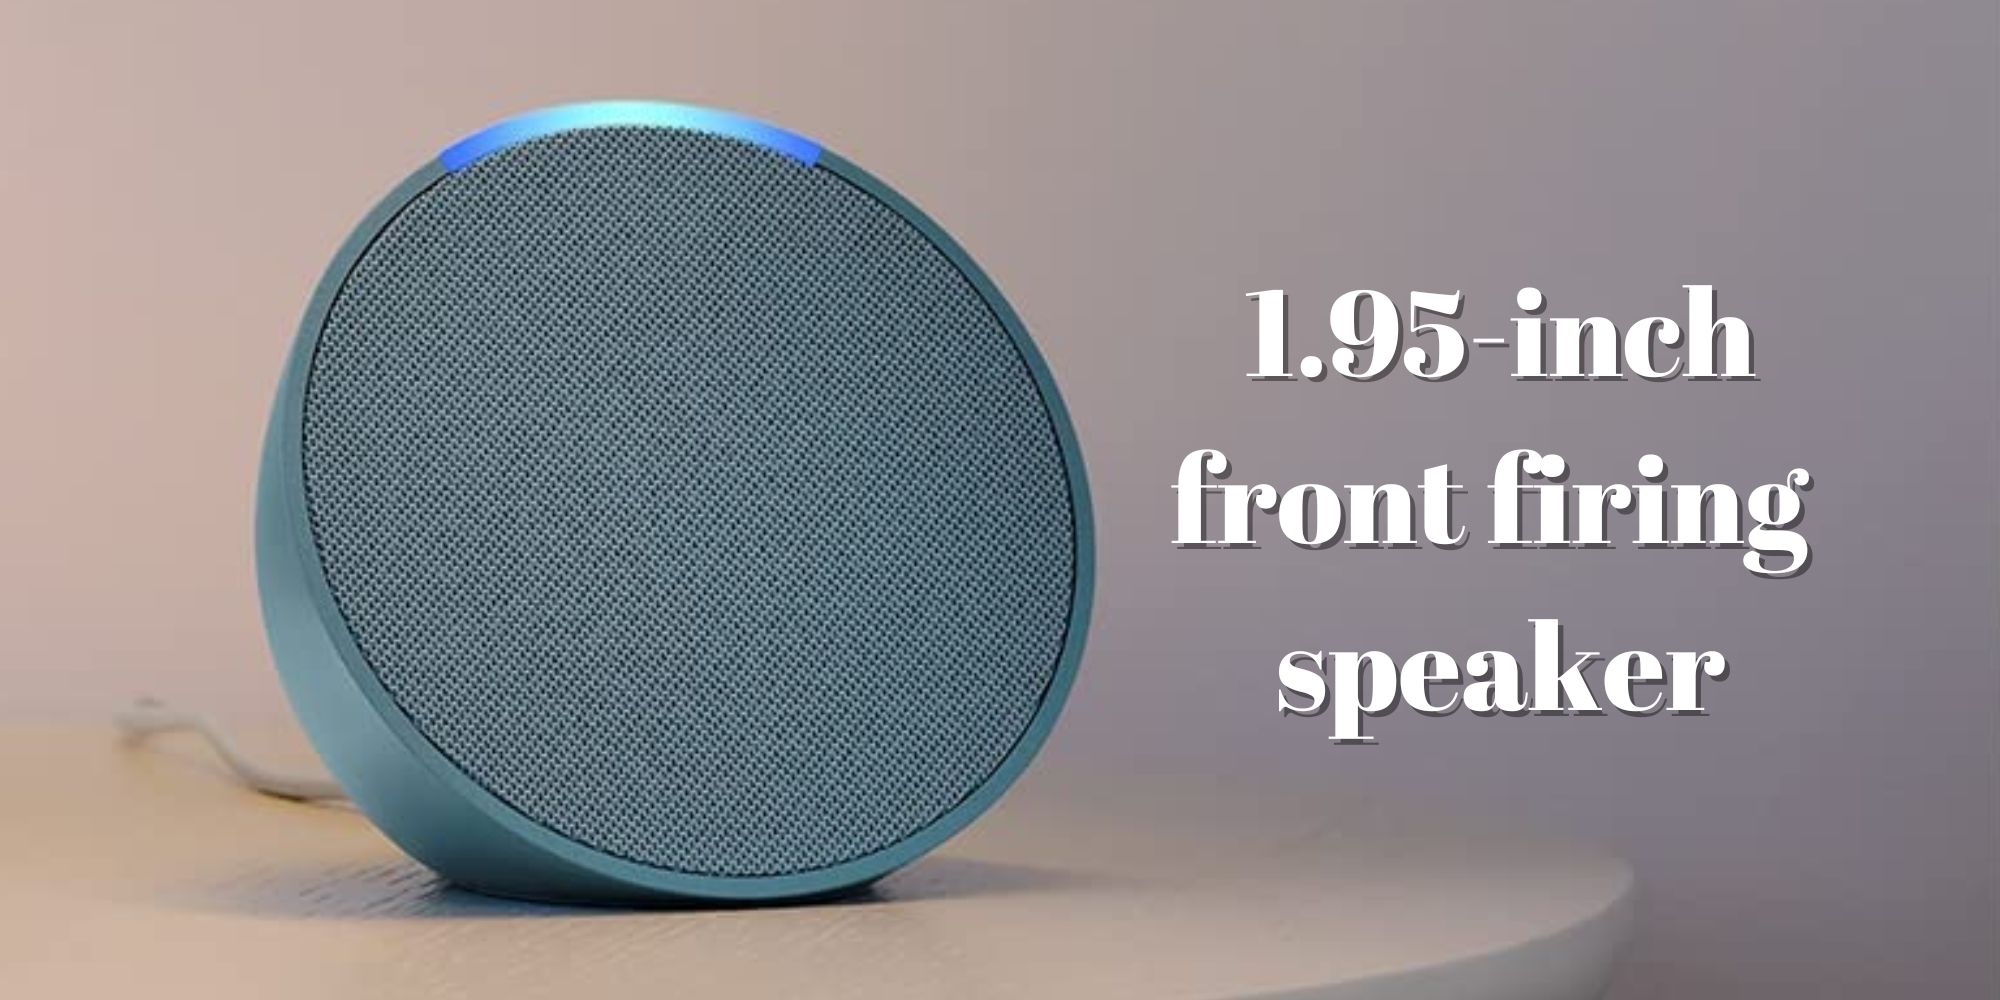 Amazon Echo Pop has a 1.95-inch front firing speaker